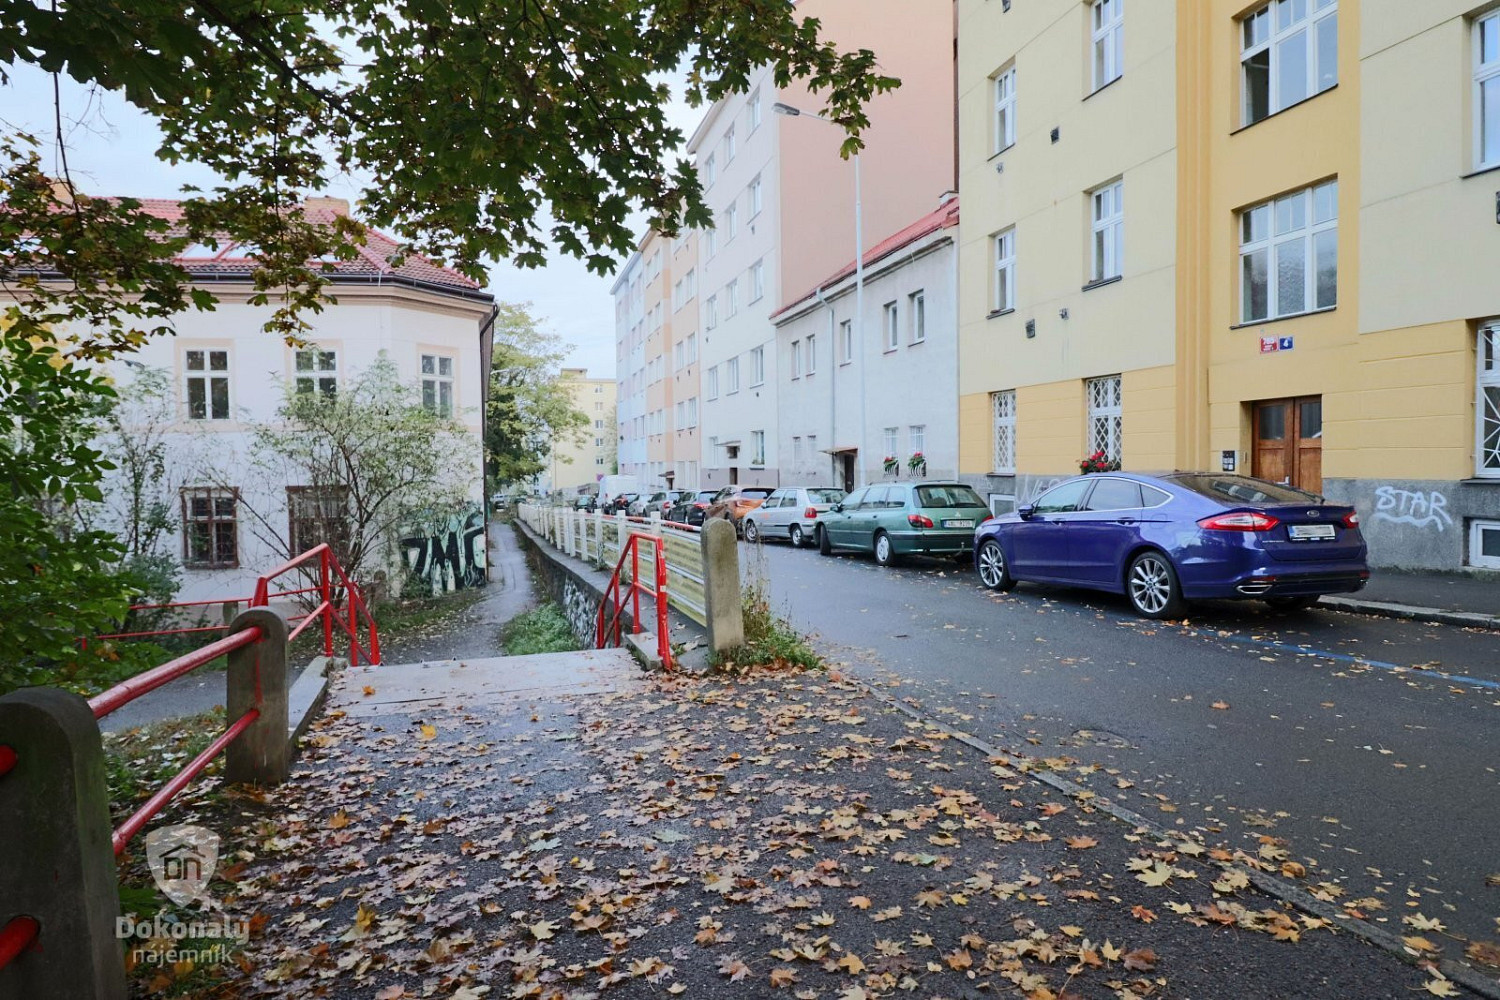 Boleslavova, Praha 4 - Nusle